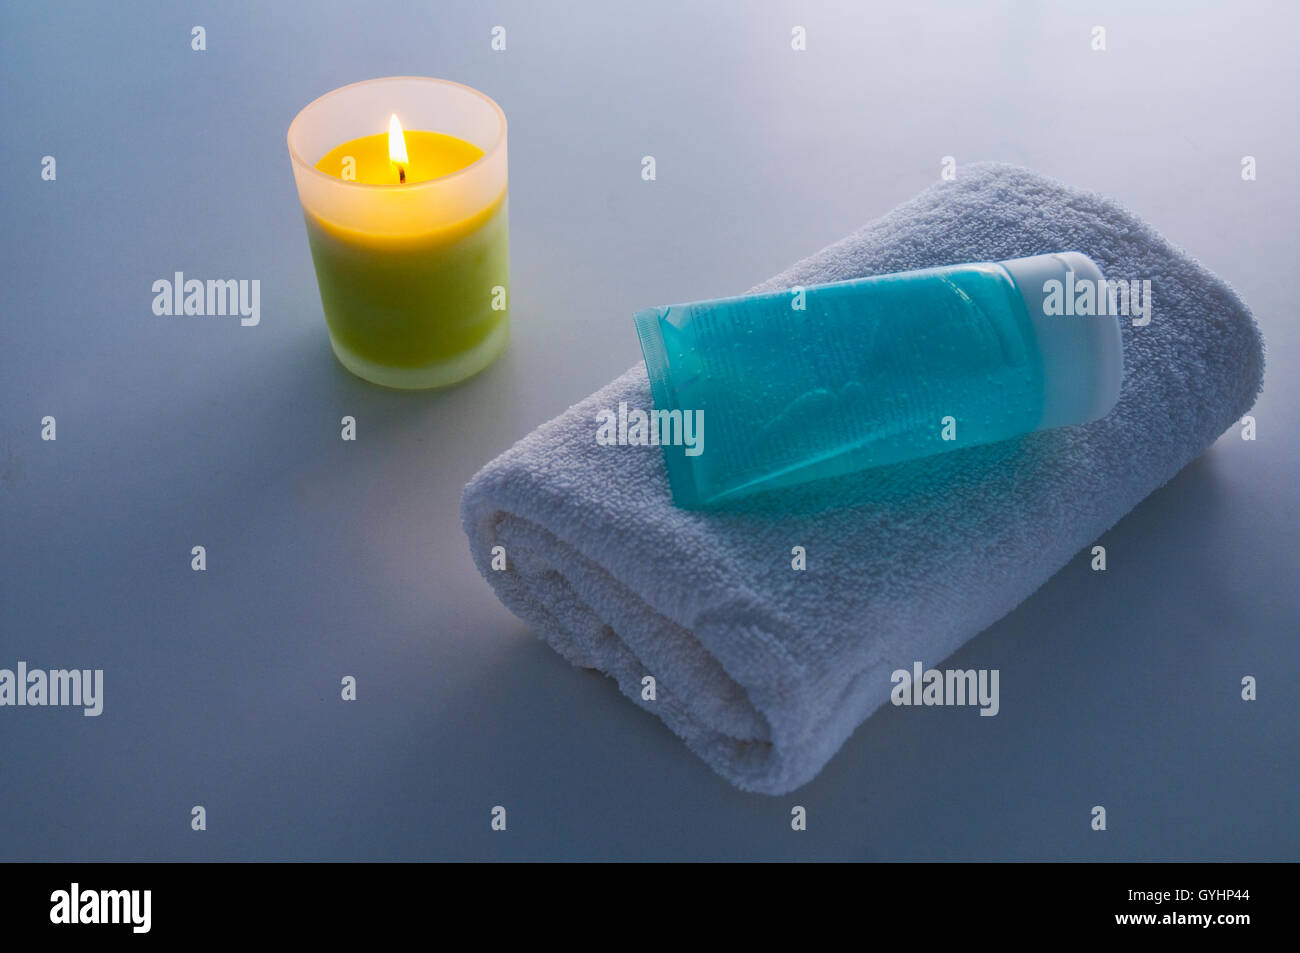 Asciugamano, gel e illuminato di candela. Foto Stock